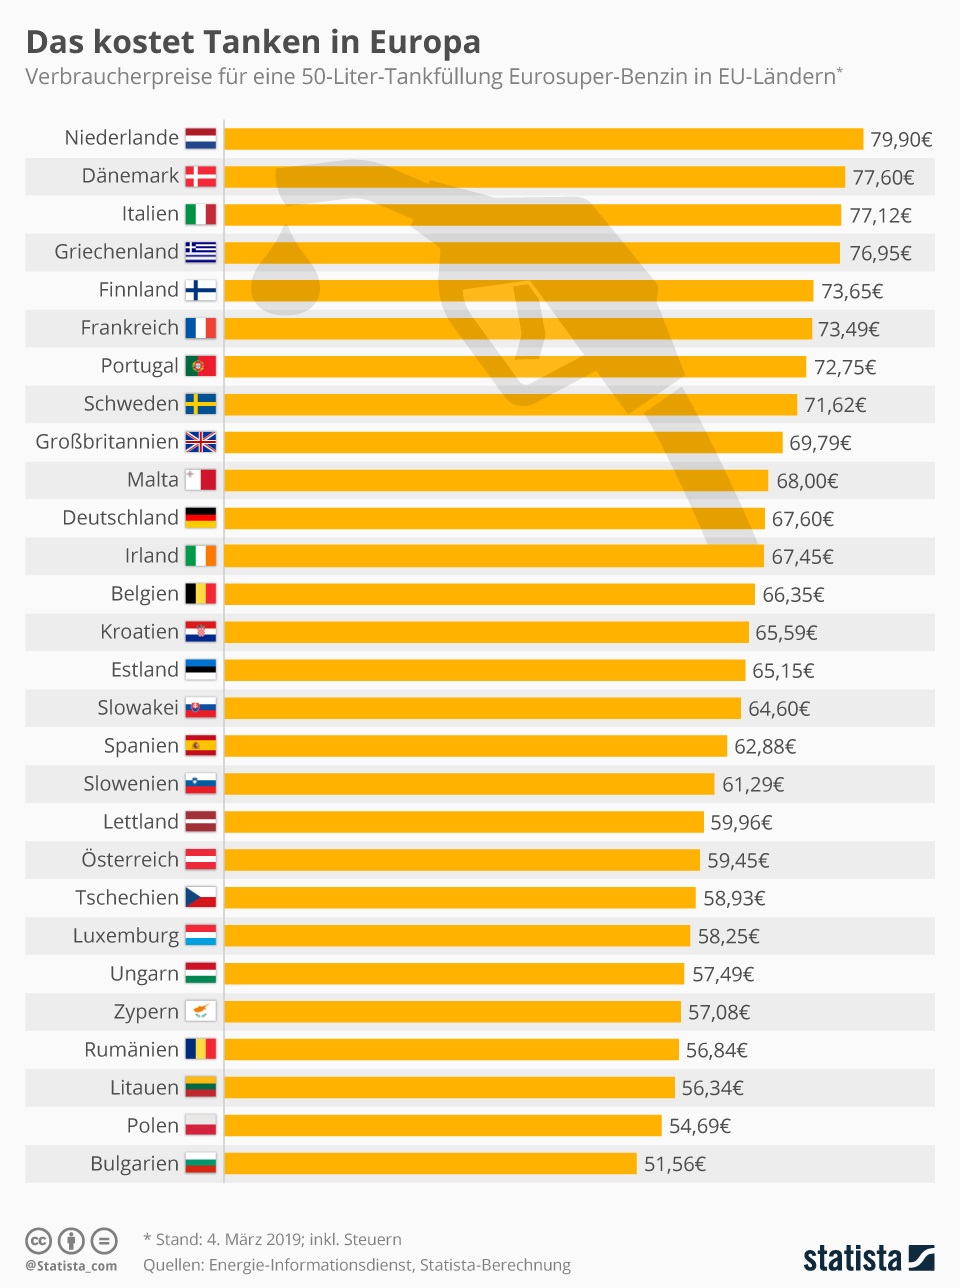 Wie die Statista-Infografik zeigt, unterscheiden sich die Benzinpreise in EU-Ländern zum Teil deutlich: Besonders teuer ist Benzin-Tanken aktuell in den Niederlanden – dort kostet eine 50-Liter-Tankfüllung im Schnitt 79,90 Euro. Auch in Dänemark greifen Autofahrer tief in die Tasche (77,60 Euro für 50 Liter). Deutschland zählt mit einem Preis von 67,60 Euro je 50 Liter Eurosuper ebenfalls zu den teureren Ländern in der EU. 